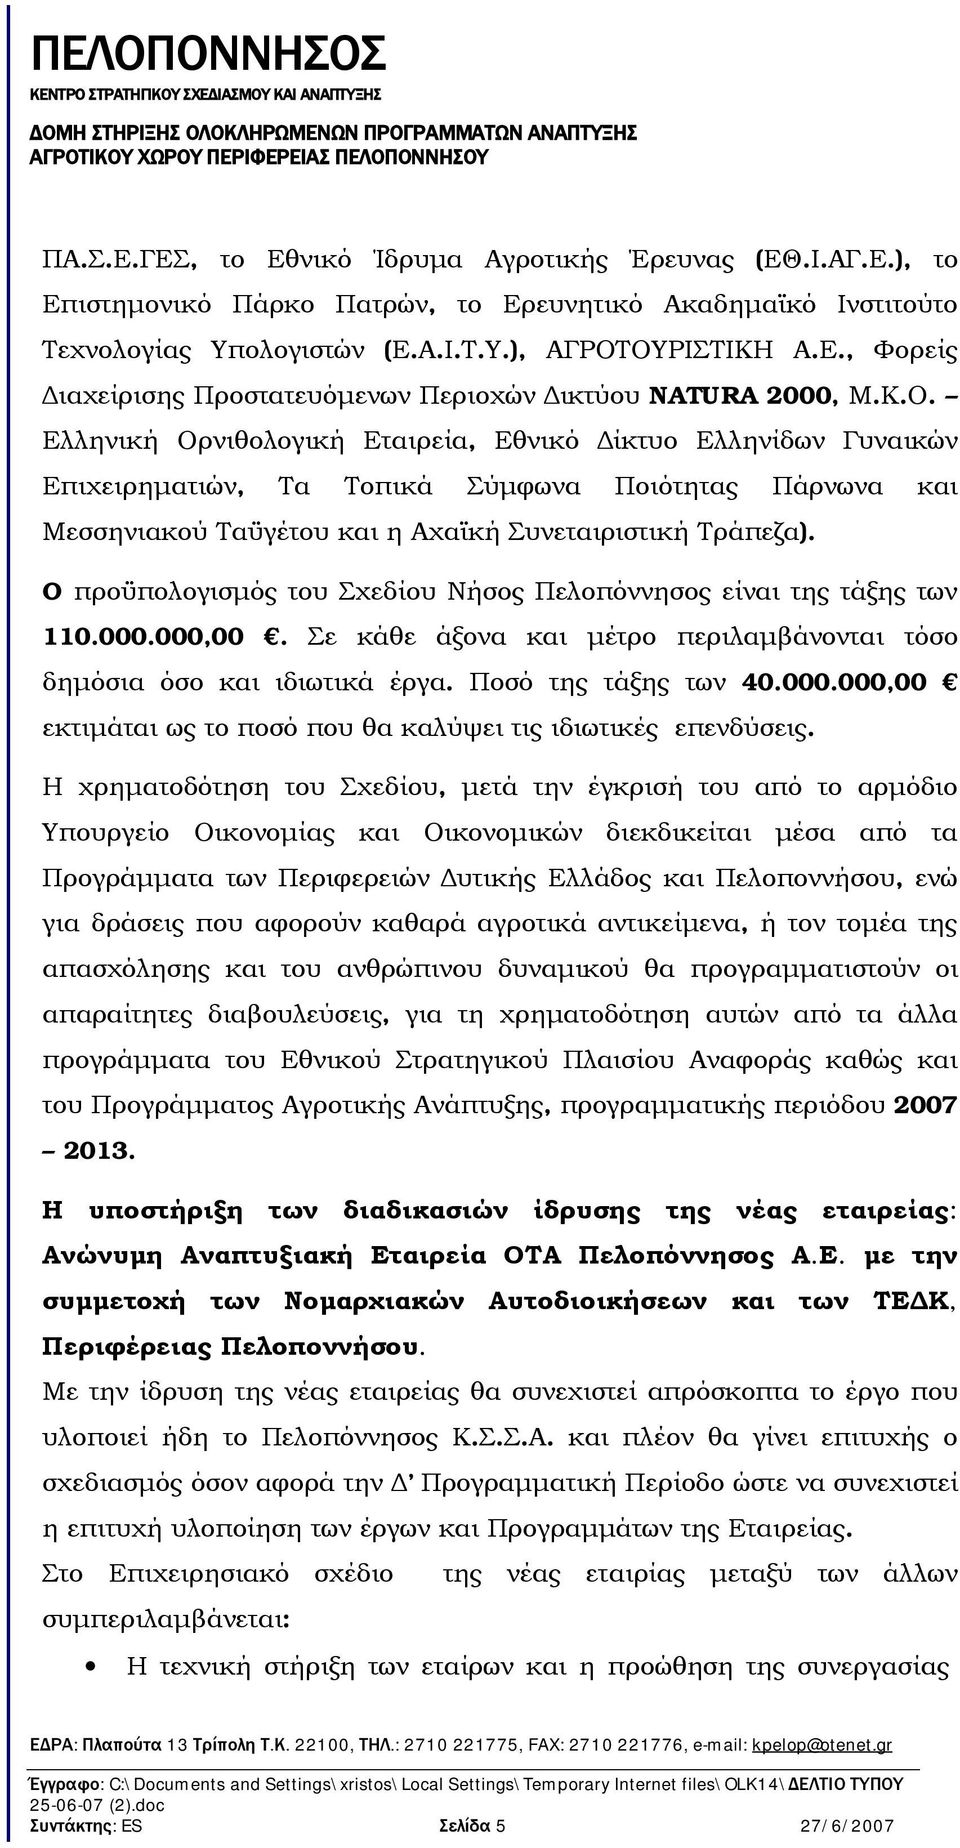 O προϋπολογισμός του Σχεδίου Νήσος Πελοπόννησος είναι της τάξης των 110.000.000,00. Σε κάθε άξονα και μέτρο περιλαμβάνονται τόσο δημόσια όσο και ιδιωτικά έργα. Ποσό της τάξης των 40.000.000,00 εκτιμάται ως το ποσό που θα καλύψει τις ιδιωτικές επενδύσεις.